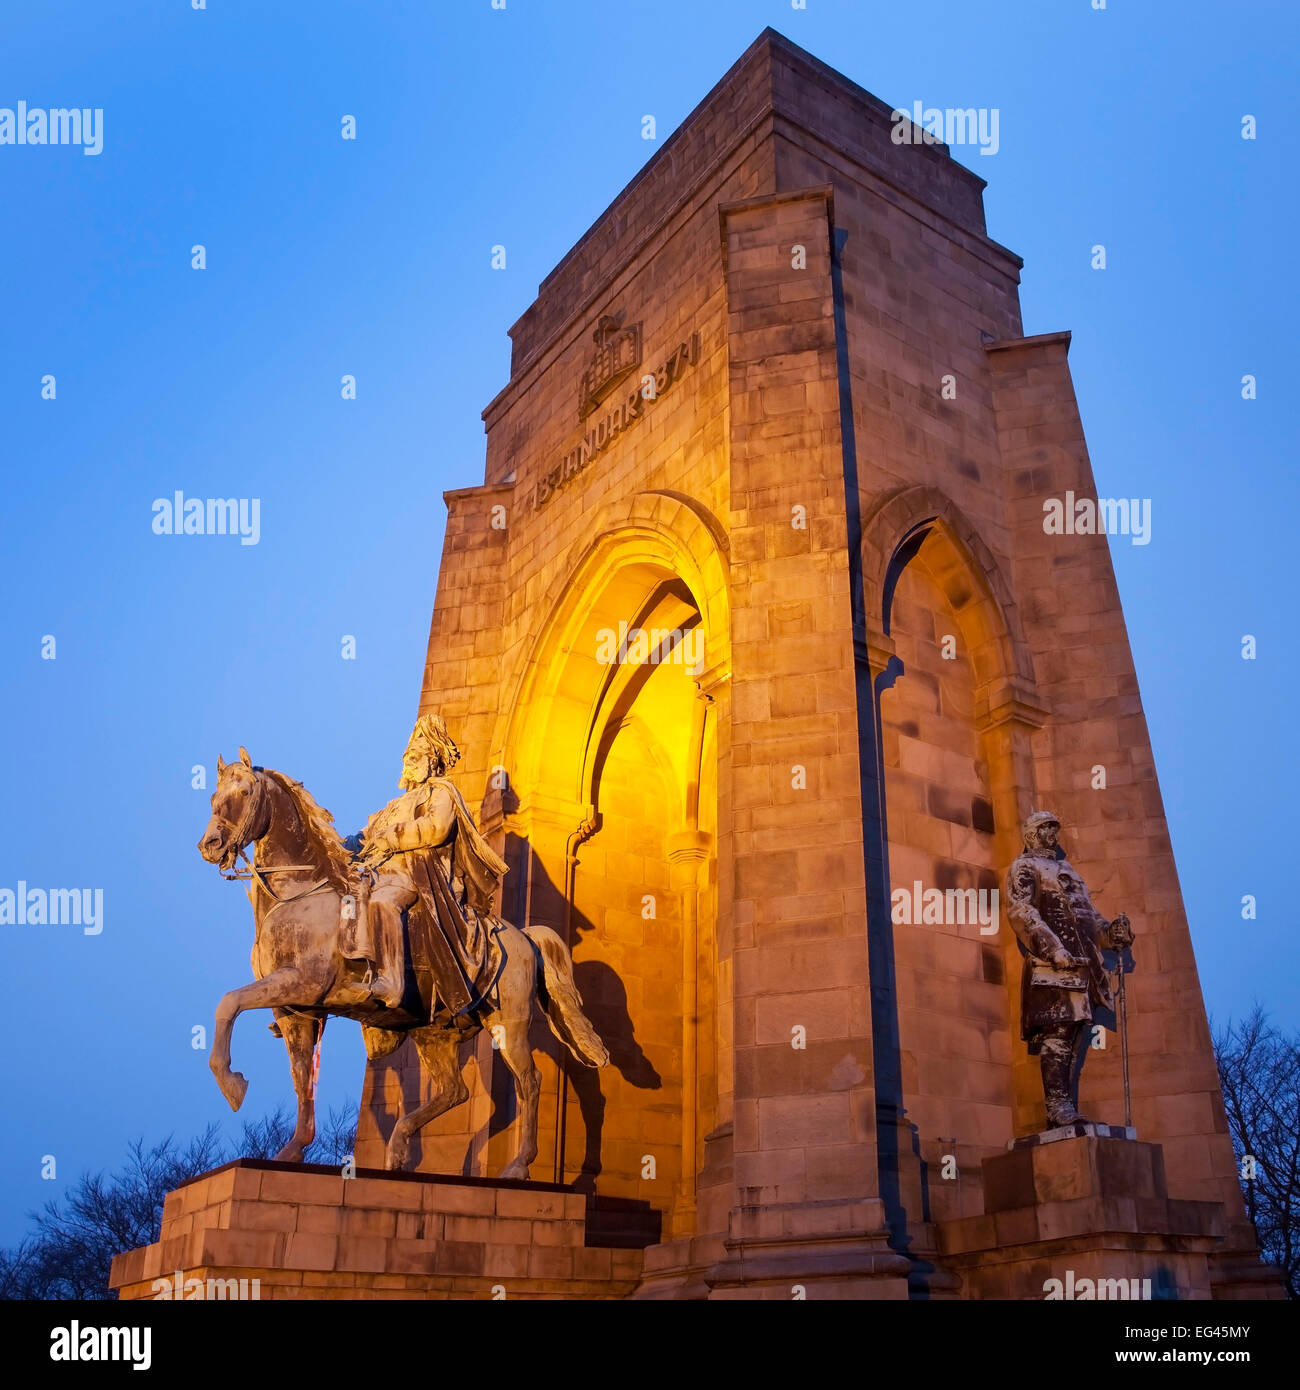 Das Kaiser-Wilhelm-Denkmal auf der Hohensyburg, Dortmund, Ruhr, Nordrhein-Westfalen, Deutschland, Europa Banque D'Images